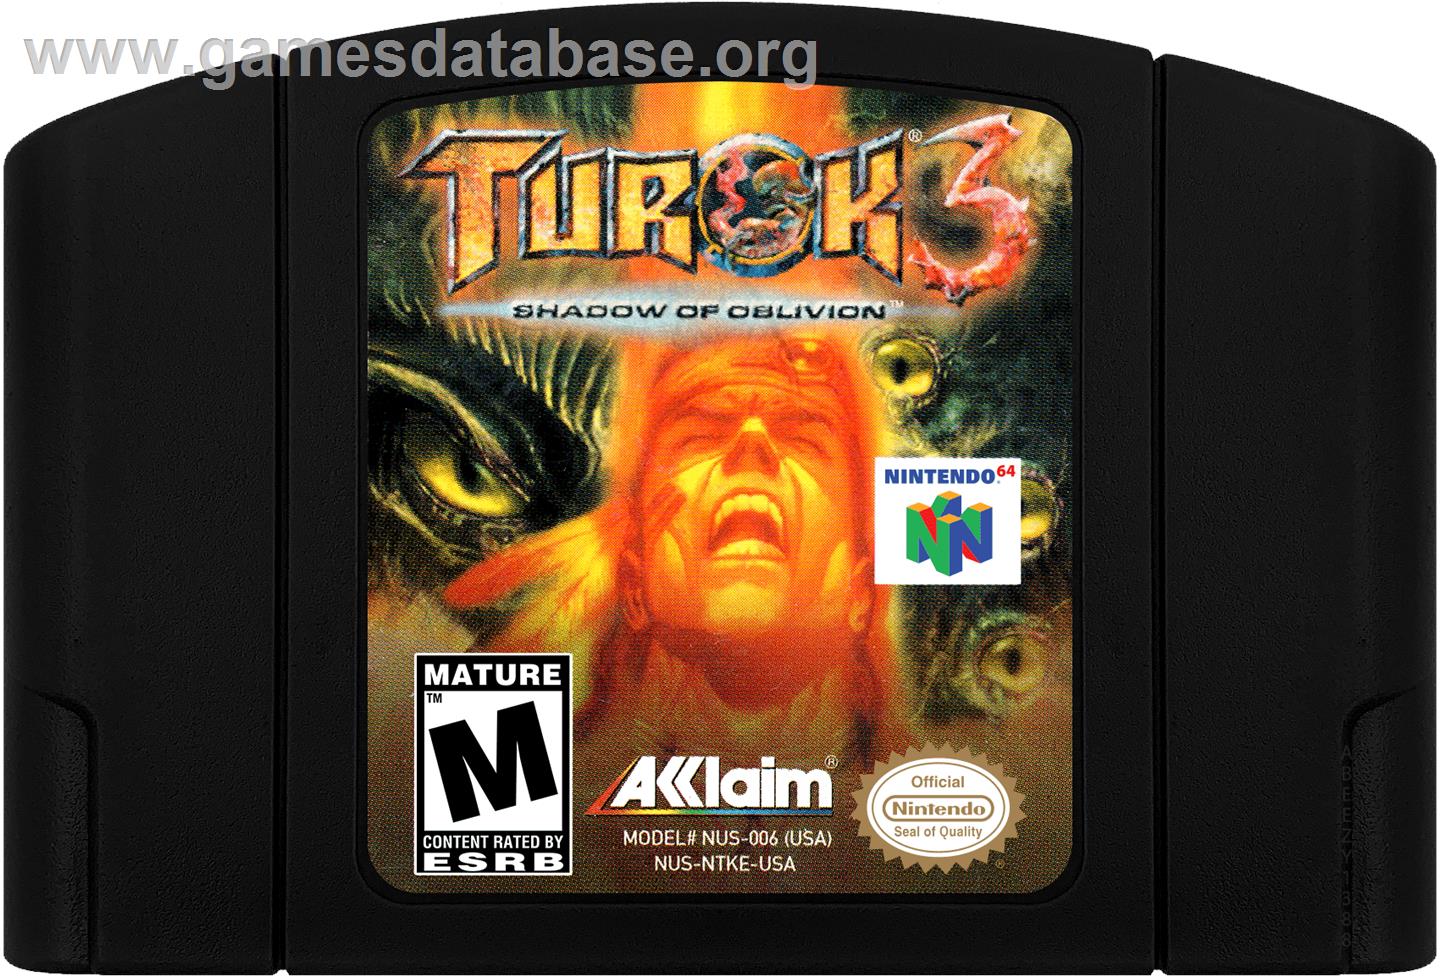 Turok 3: Shadow of Oblivion - Nintendo N64 - Artwork - Cartridge